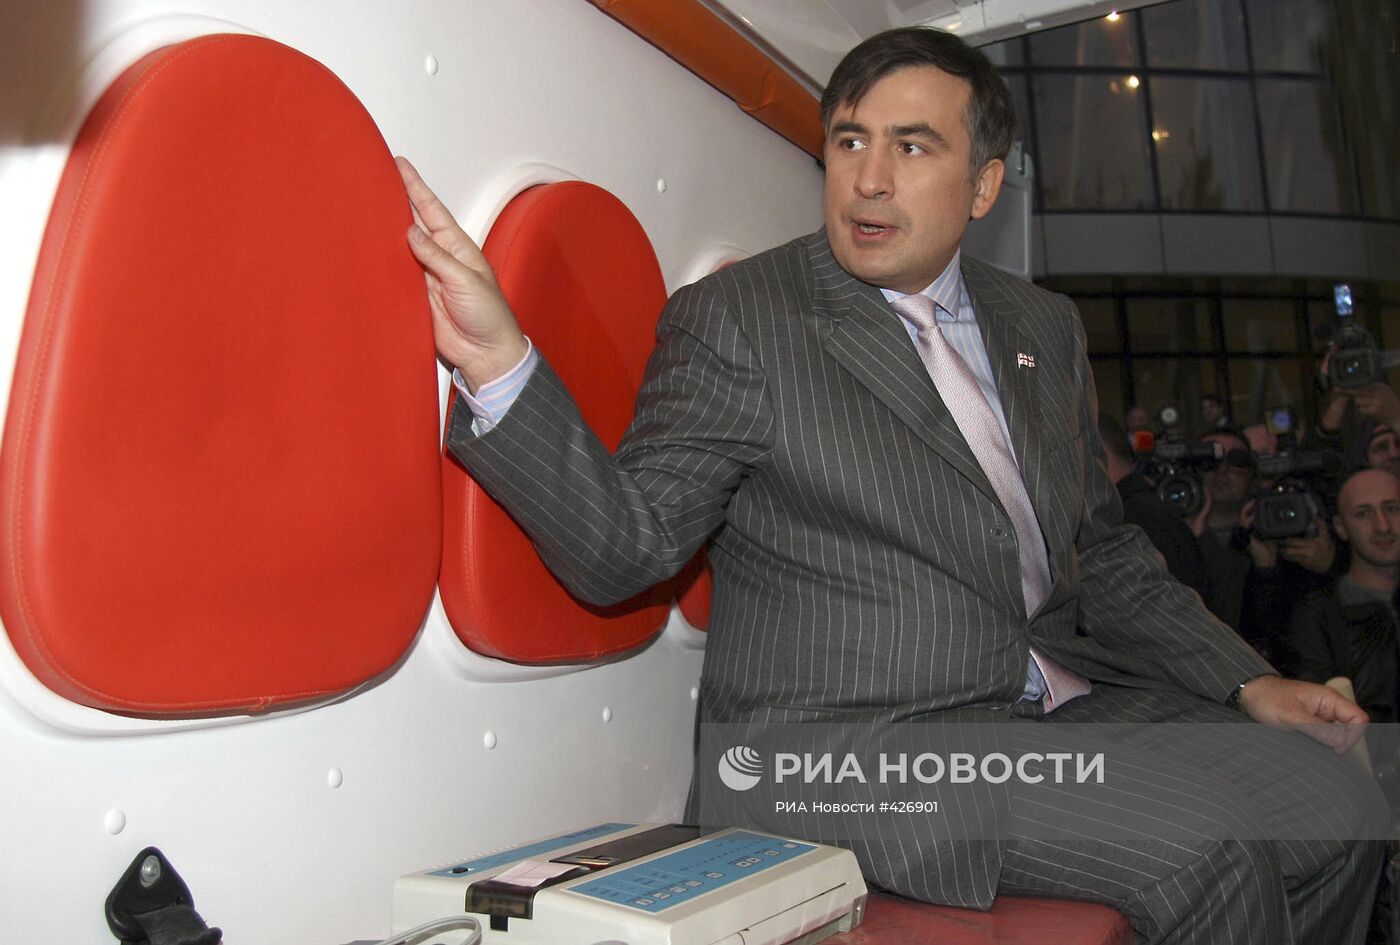 Президент Грузии Михаил Саакашвили в Республиканской больнице